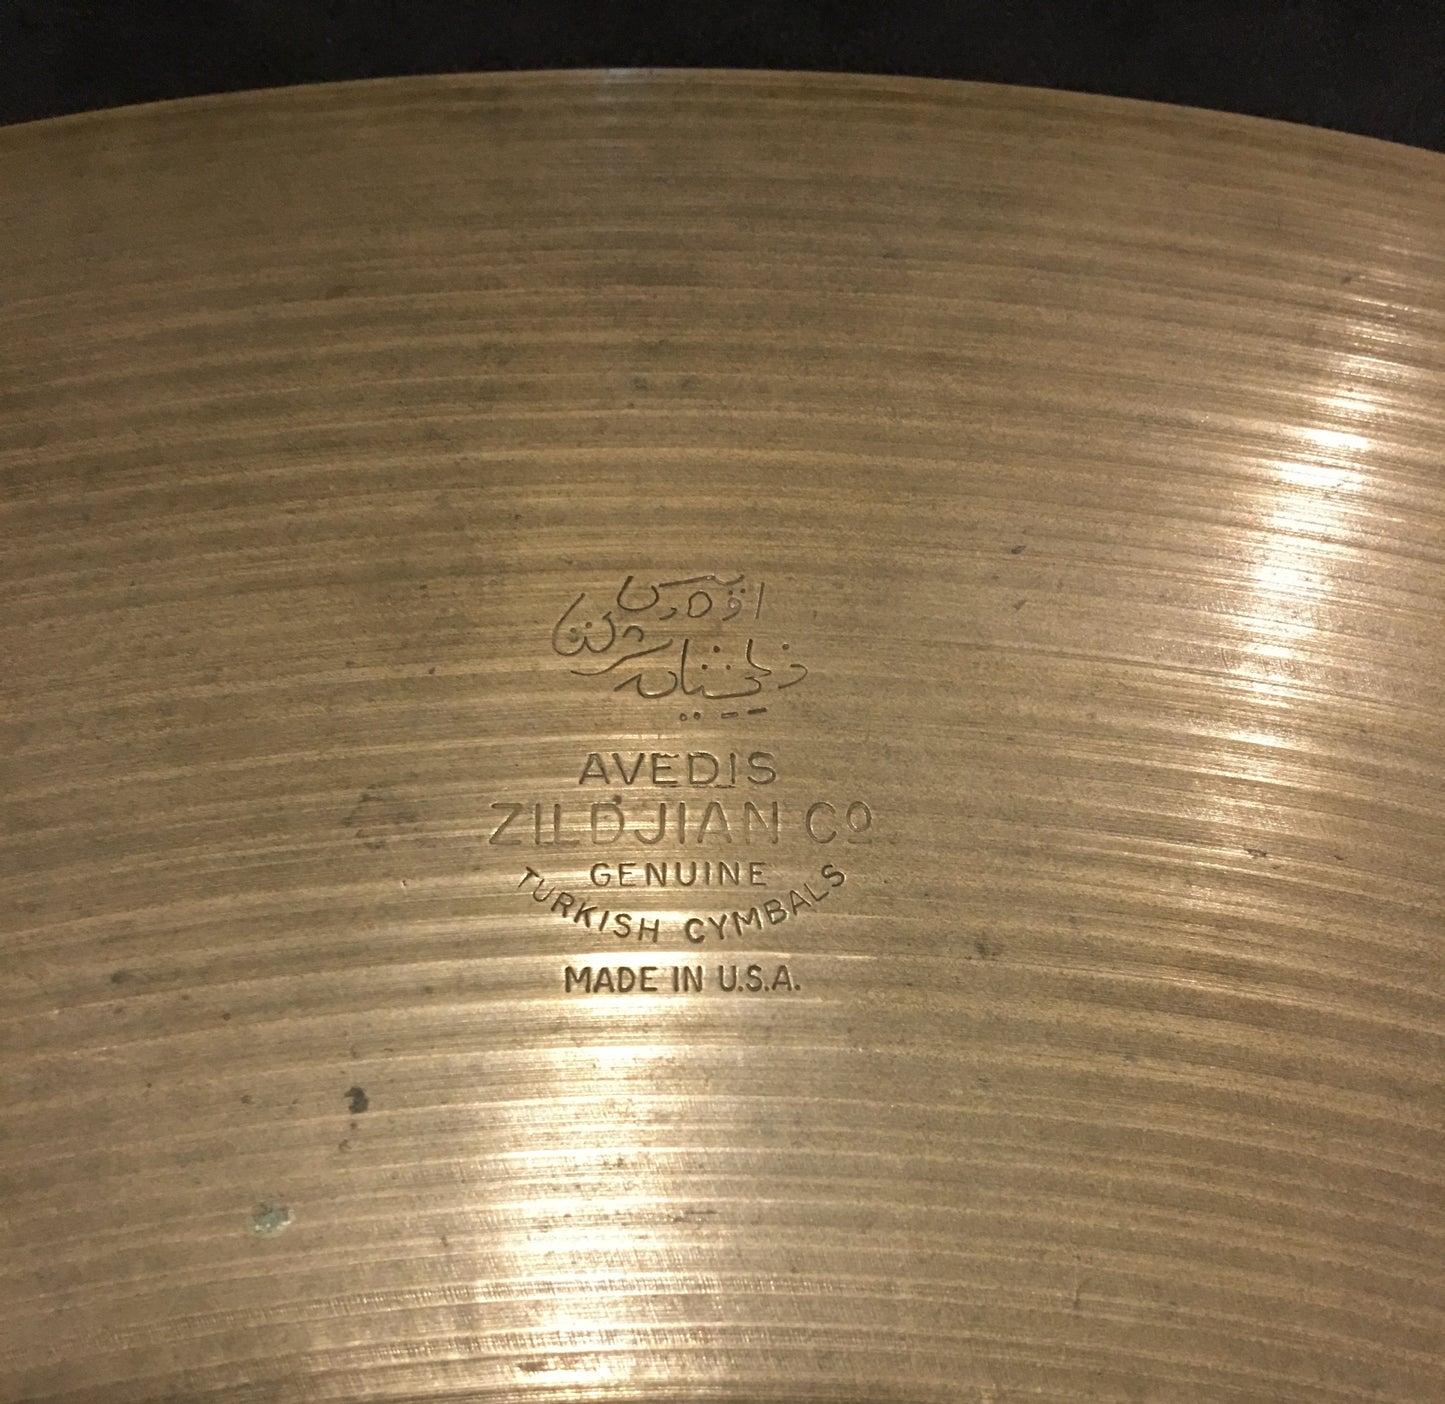 24" 1960s Zildjian A Ride Cymbal 3248g #461